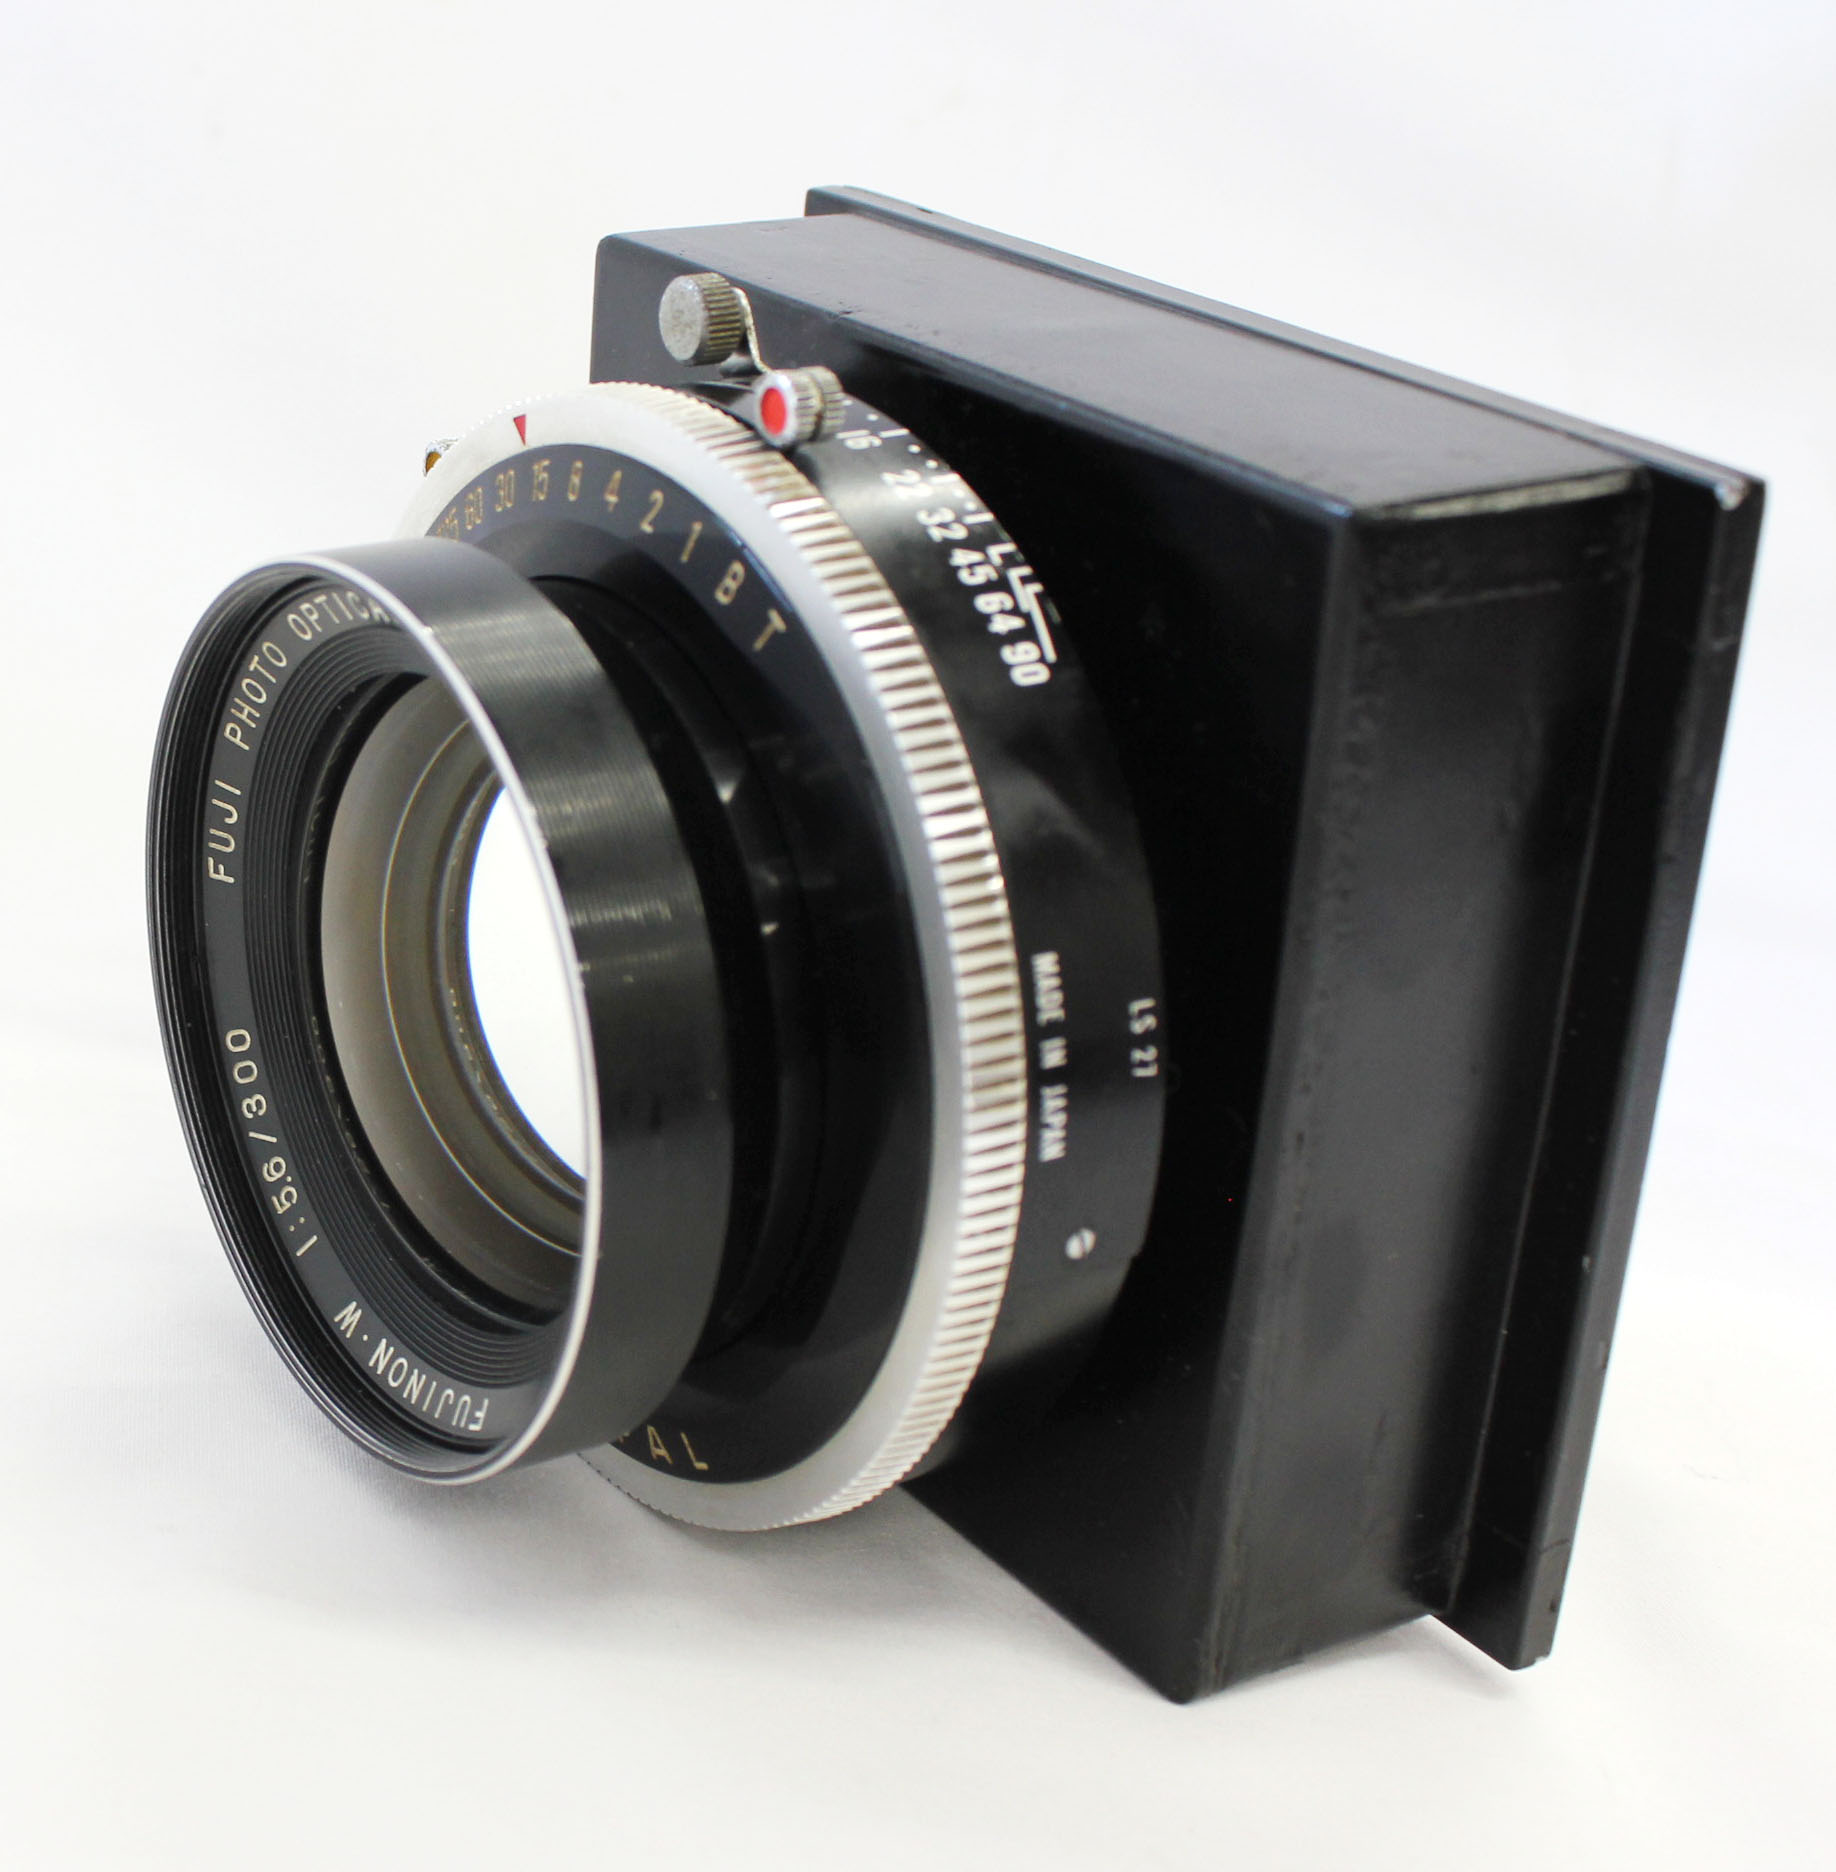 Fuji Fujinon W 300mm F/5.6 8x10 4x5 Large Format Lens Copal No.3 Shutter from Japan Photo 2